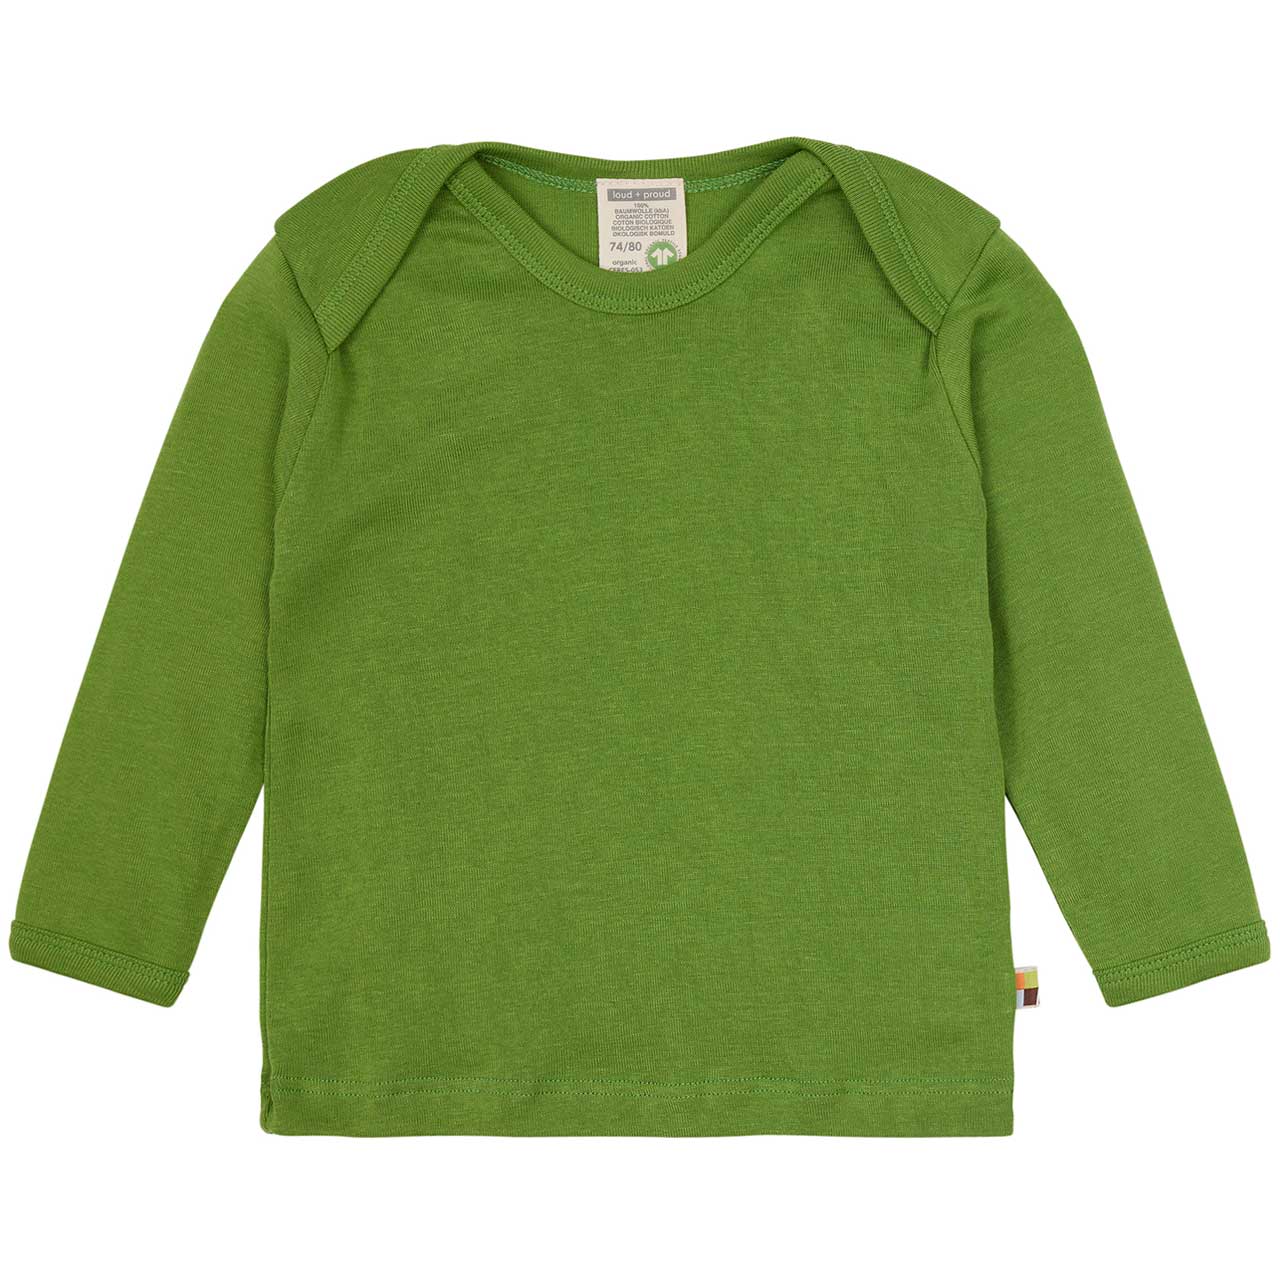 Feinripp Shirt weich und elastisch 100% Baumwolle grün